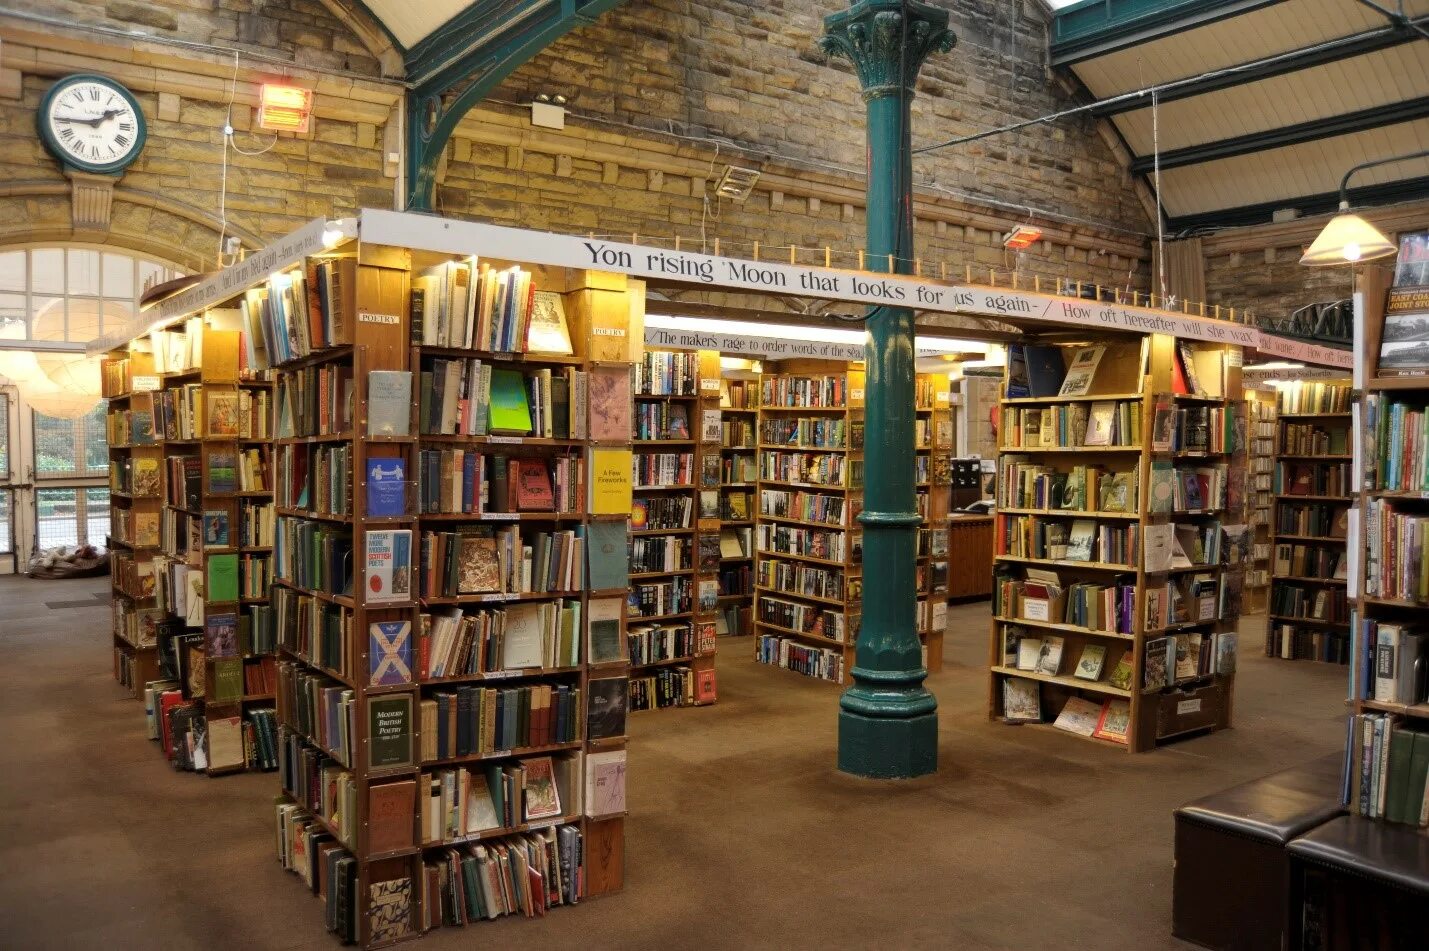 My book library. Barter books, Алник, Великобритания. Книжный магазин в Англии. Винтажный книжный магазин.